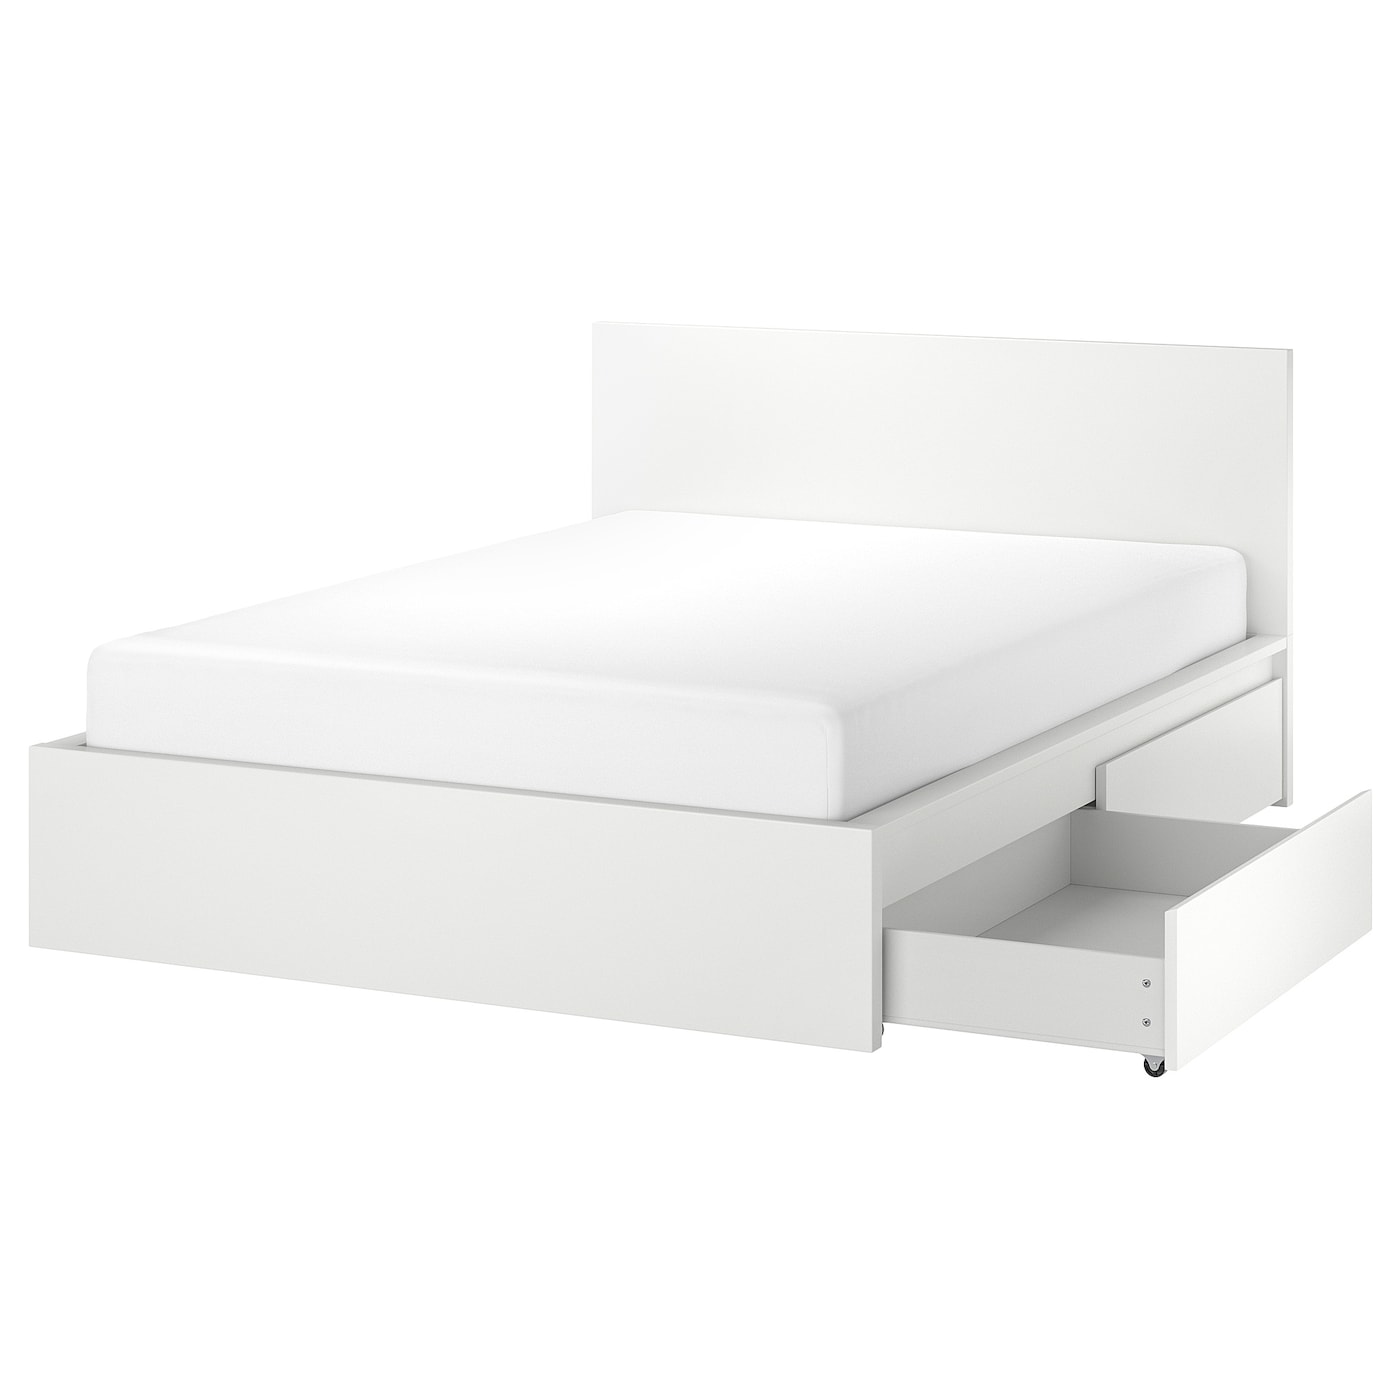 Каркас кровати с 2 ящиками для хранения - IKEA MALM, 200х180 см, белый, МАЛЬМ ИКЕА